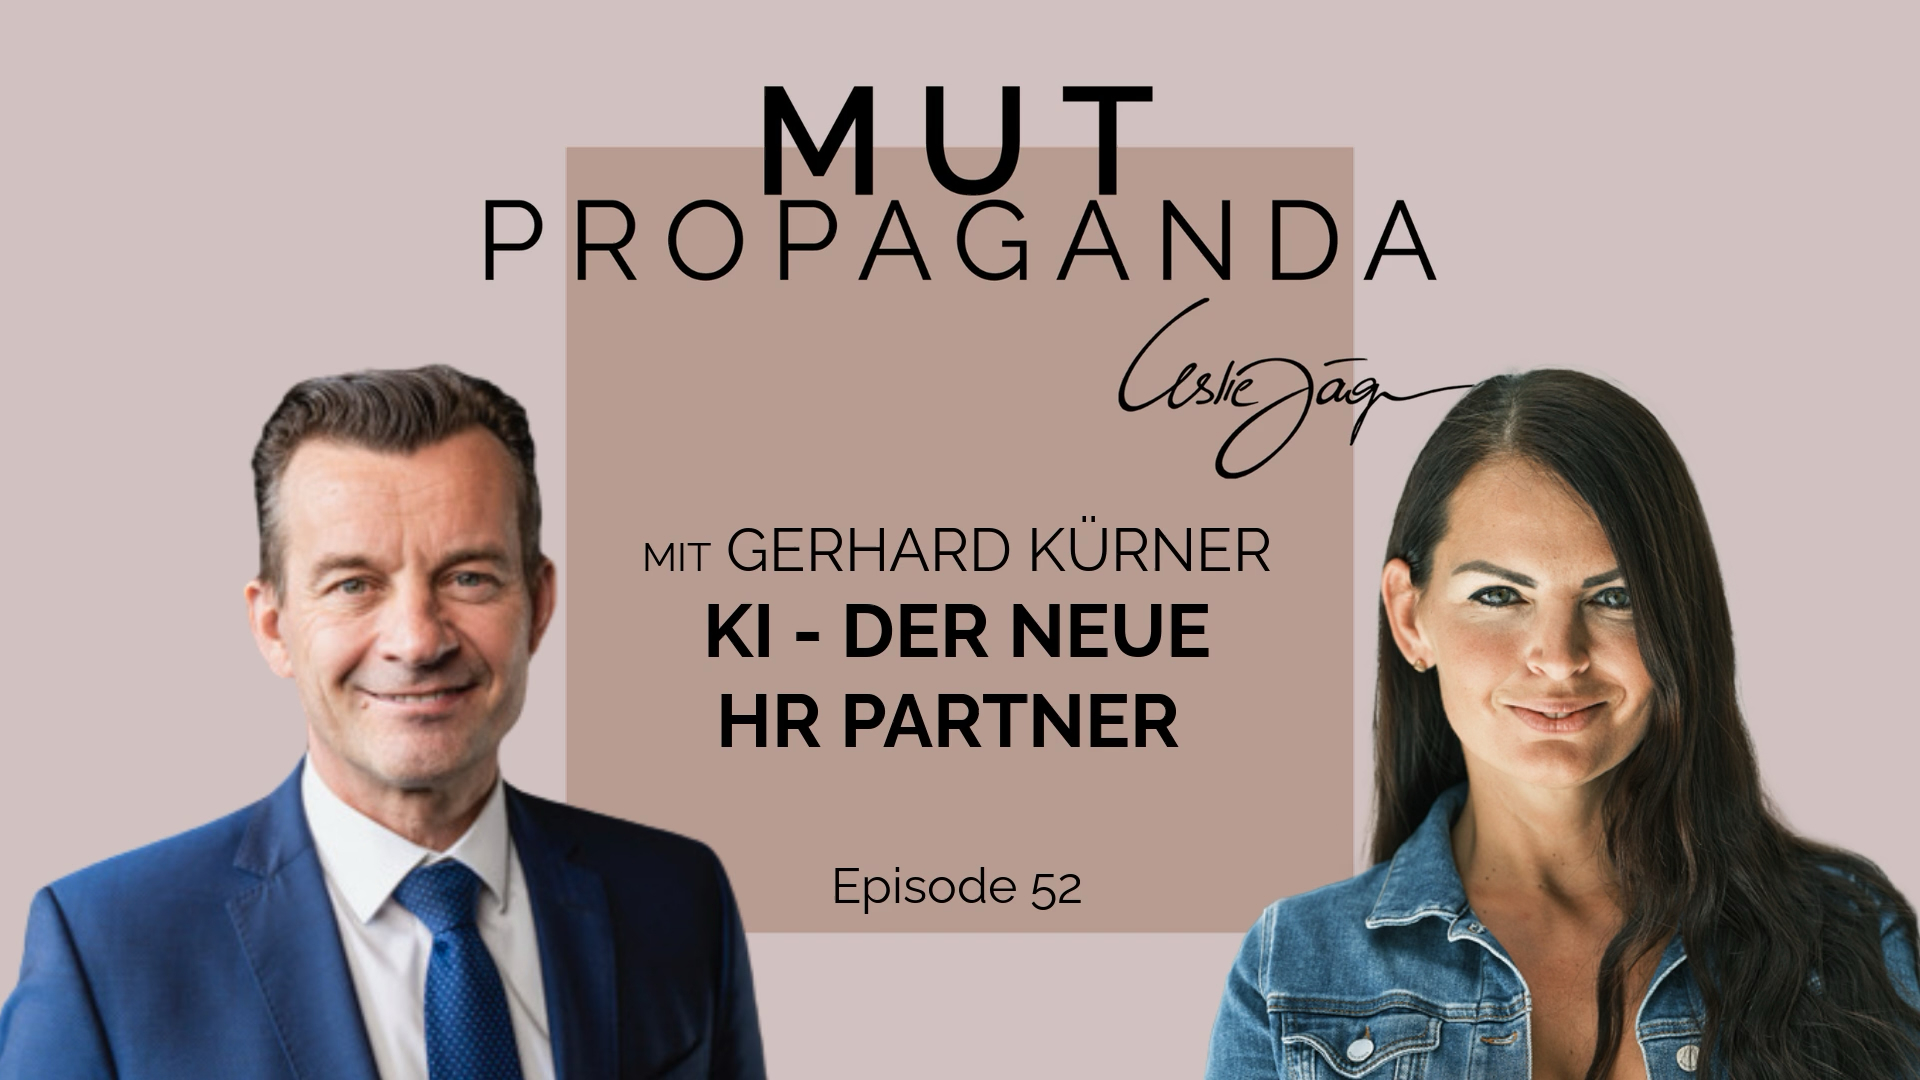 KI, der neue HR Partner - im Interview mit Gerhard Kürner